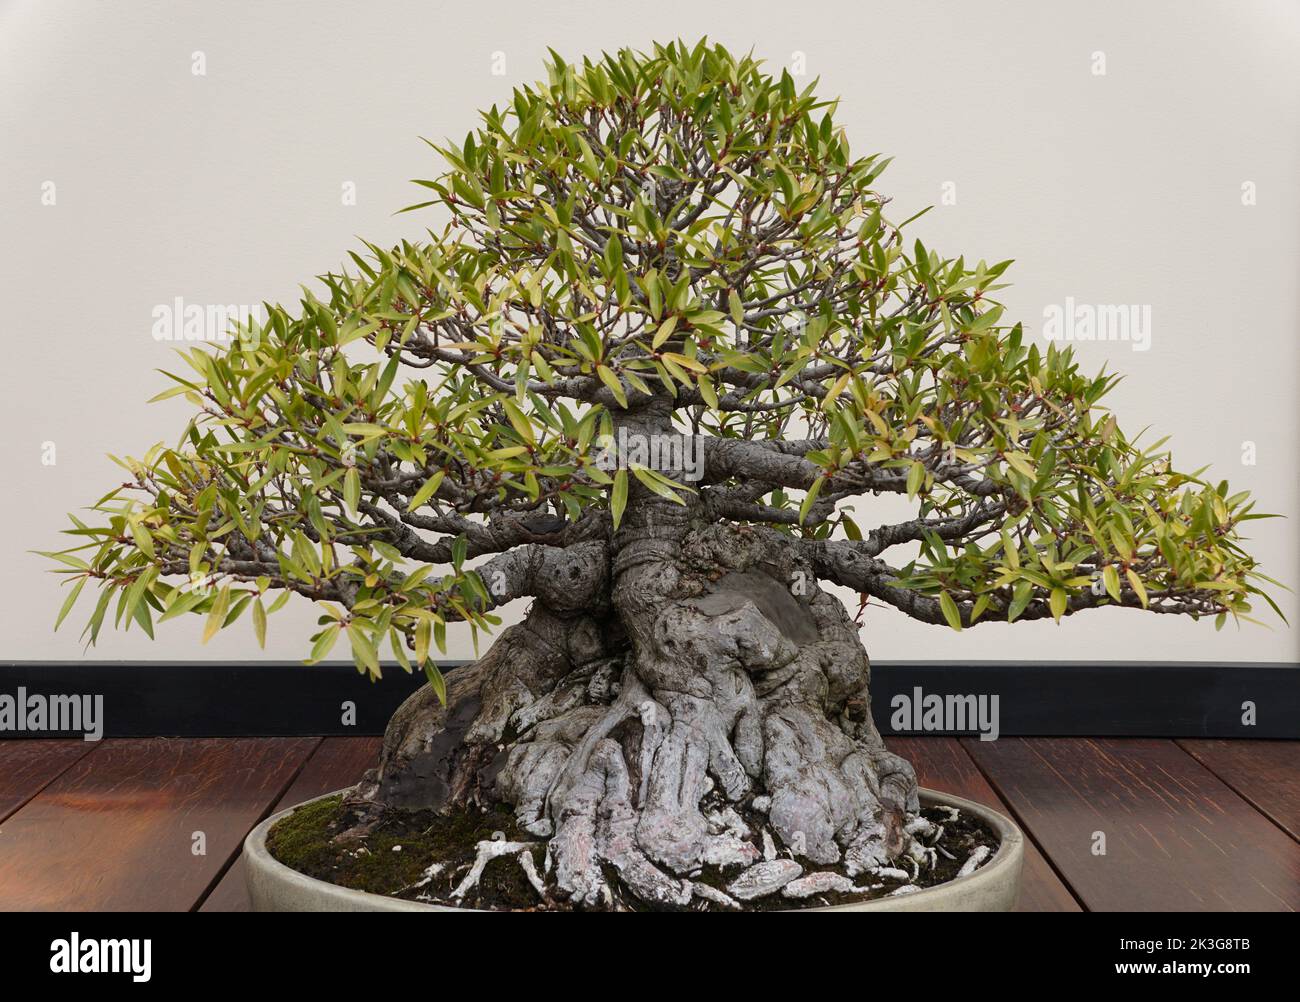 Ein schöner und trainierter Weidenblatt Ficus Bonsai Baum mit dicker Rinde und winzigen grünen Blättern in einem Keramiktopf Stockfoto